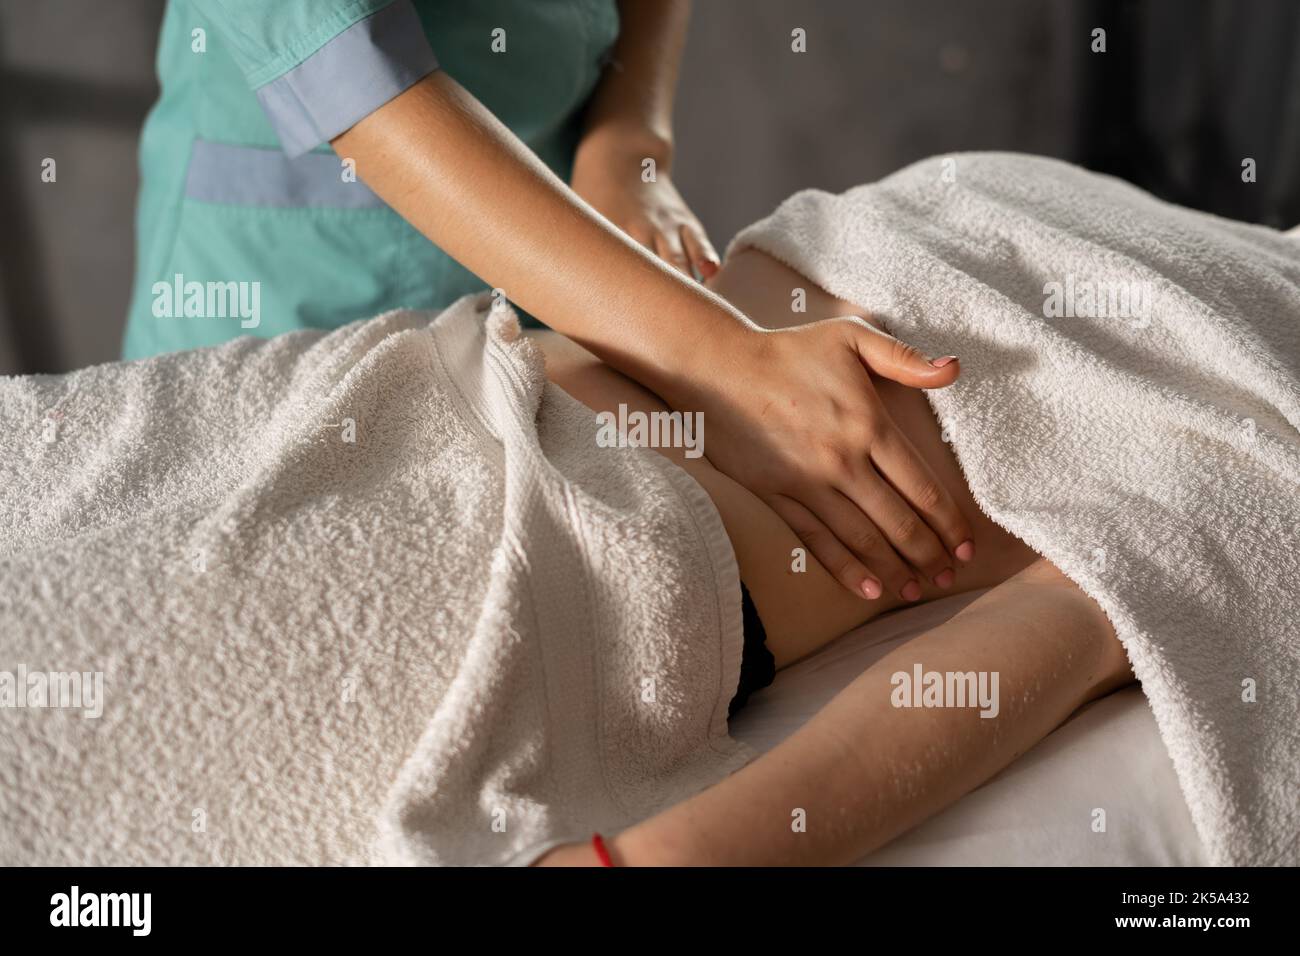 Hände massieren weiblichen Bauch. Makro-Nahaufnahme des Therapeuten, der Druck auf den Bauch ausübt. Thai entspannende Magenmassage Stockfoto